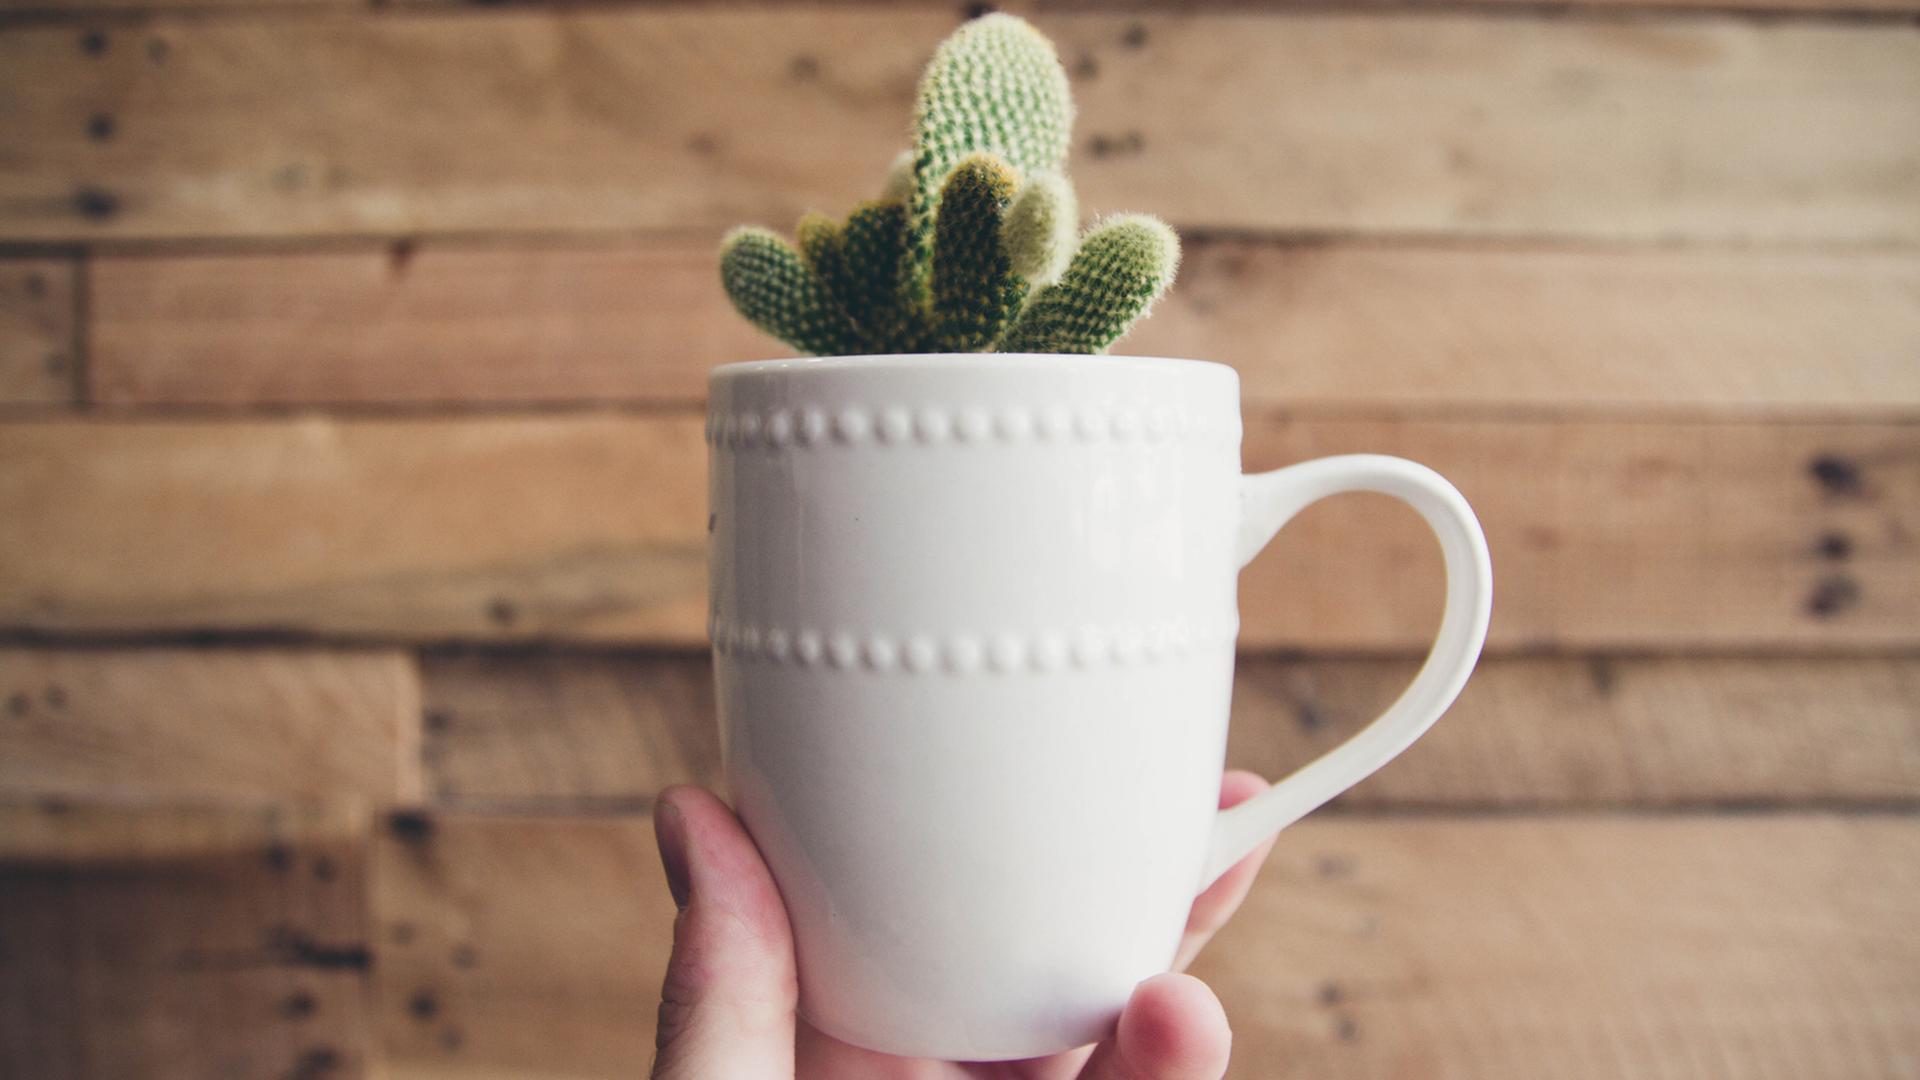 Ein kleiner grüner Kaktus guckt aus einer weißen Tasse heraus, die von einer Hand in die Höhe gehalten wird.